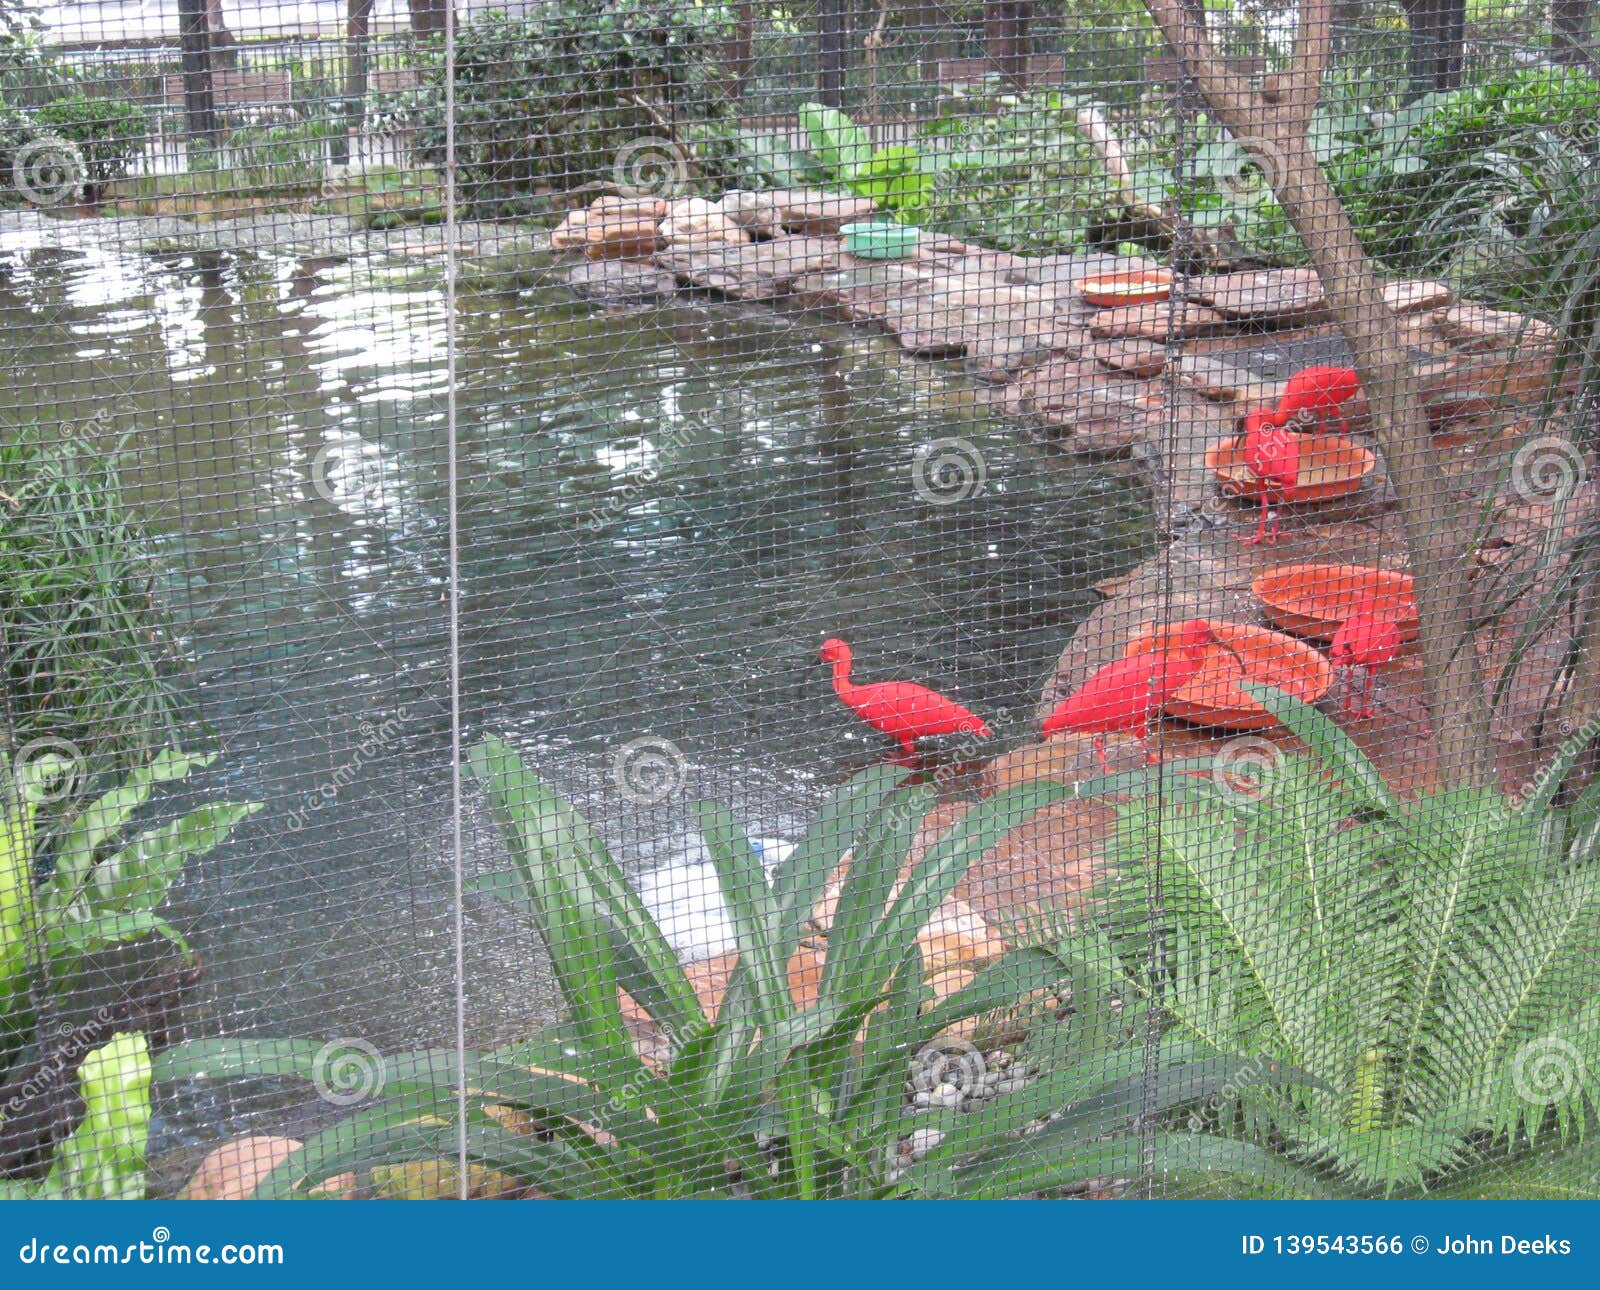 bright coloured birds at hong kong zoological & botanical gardens